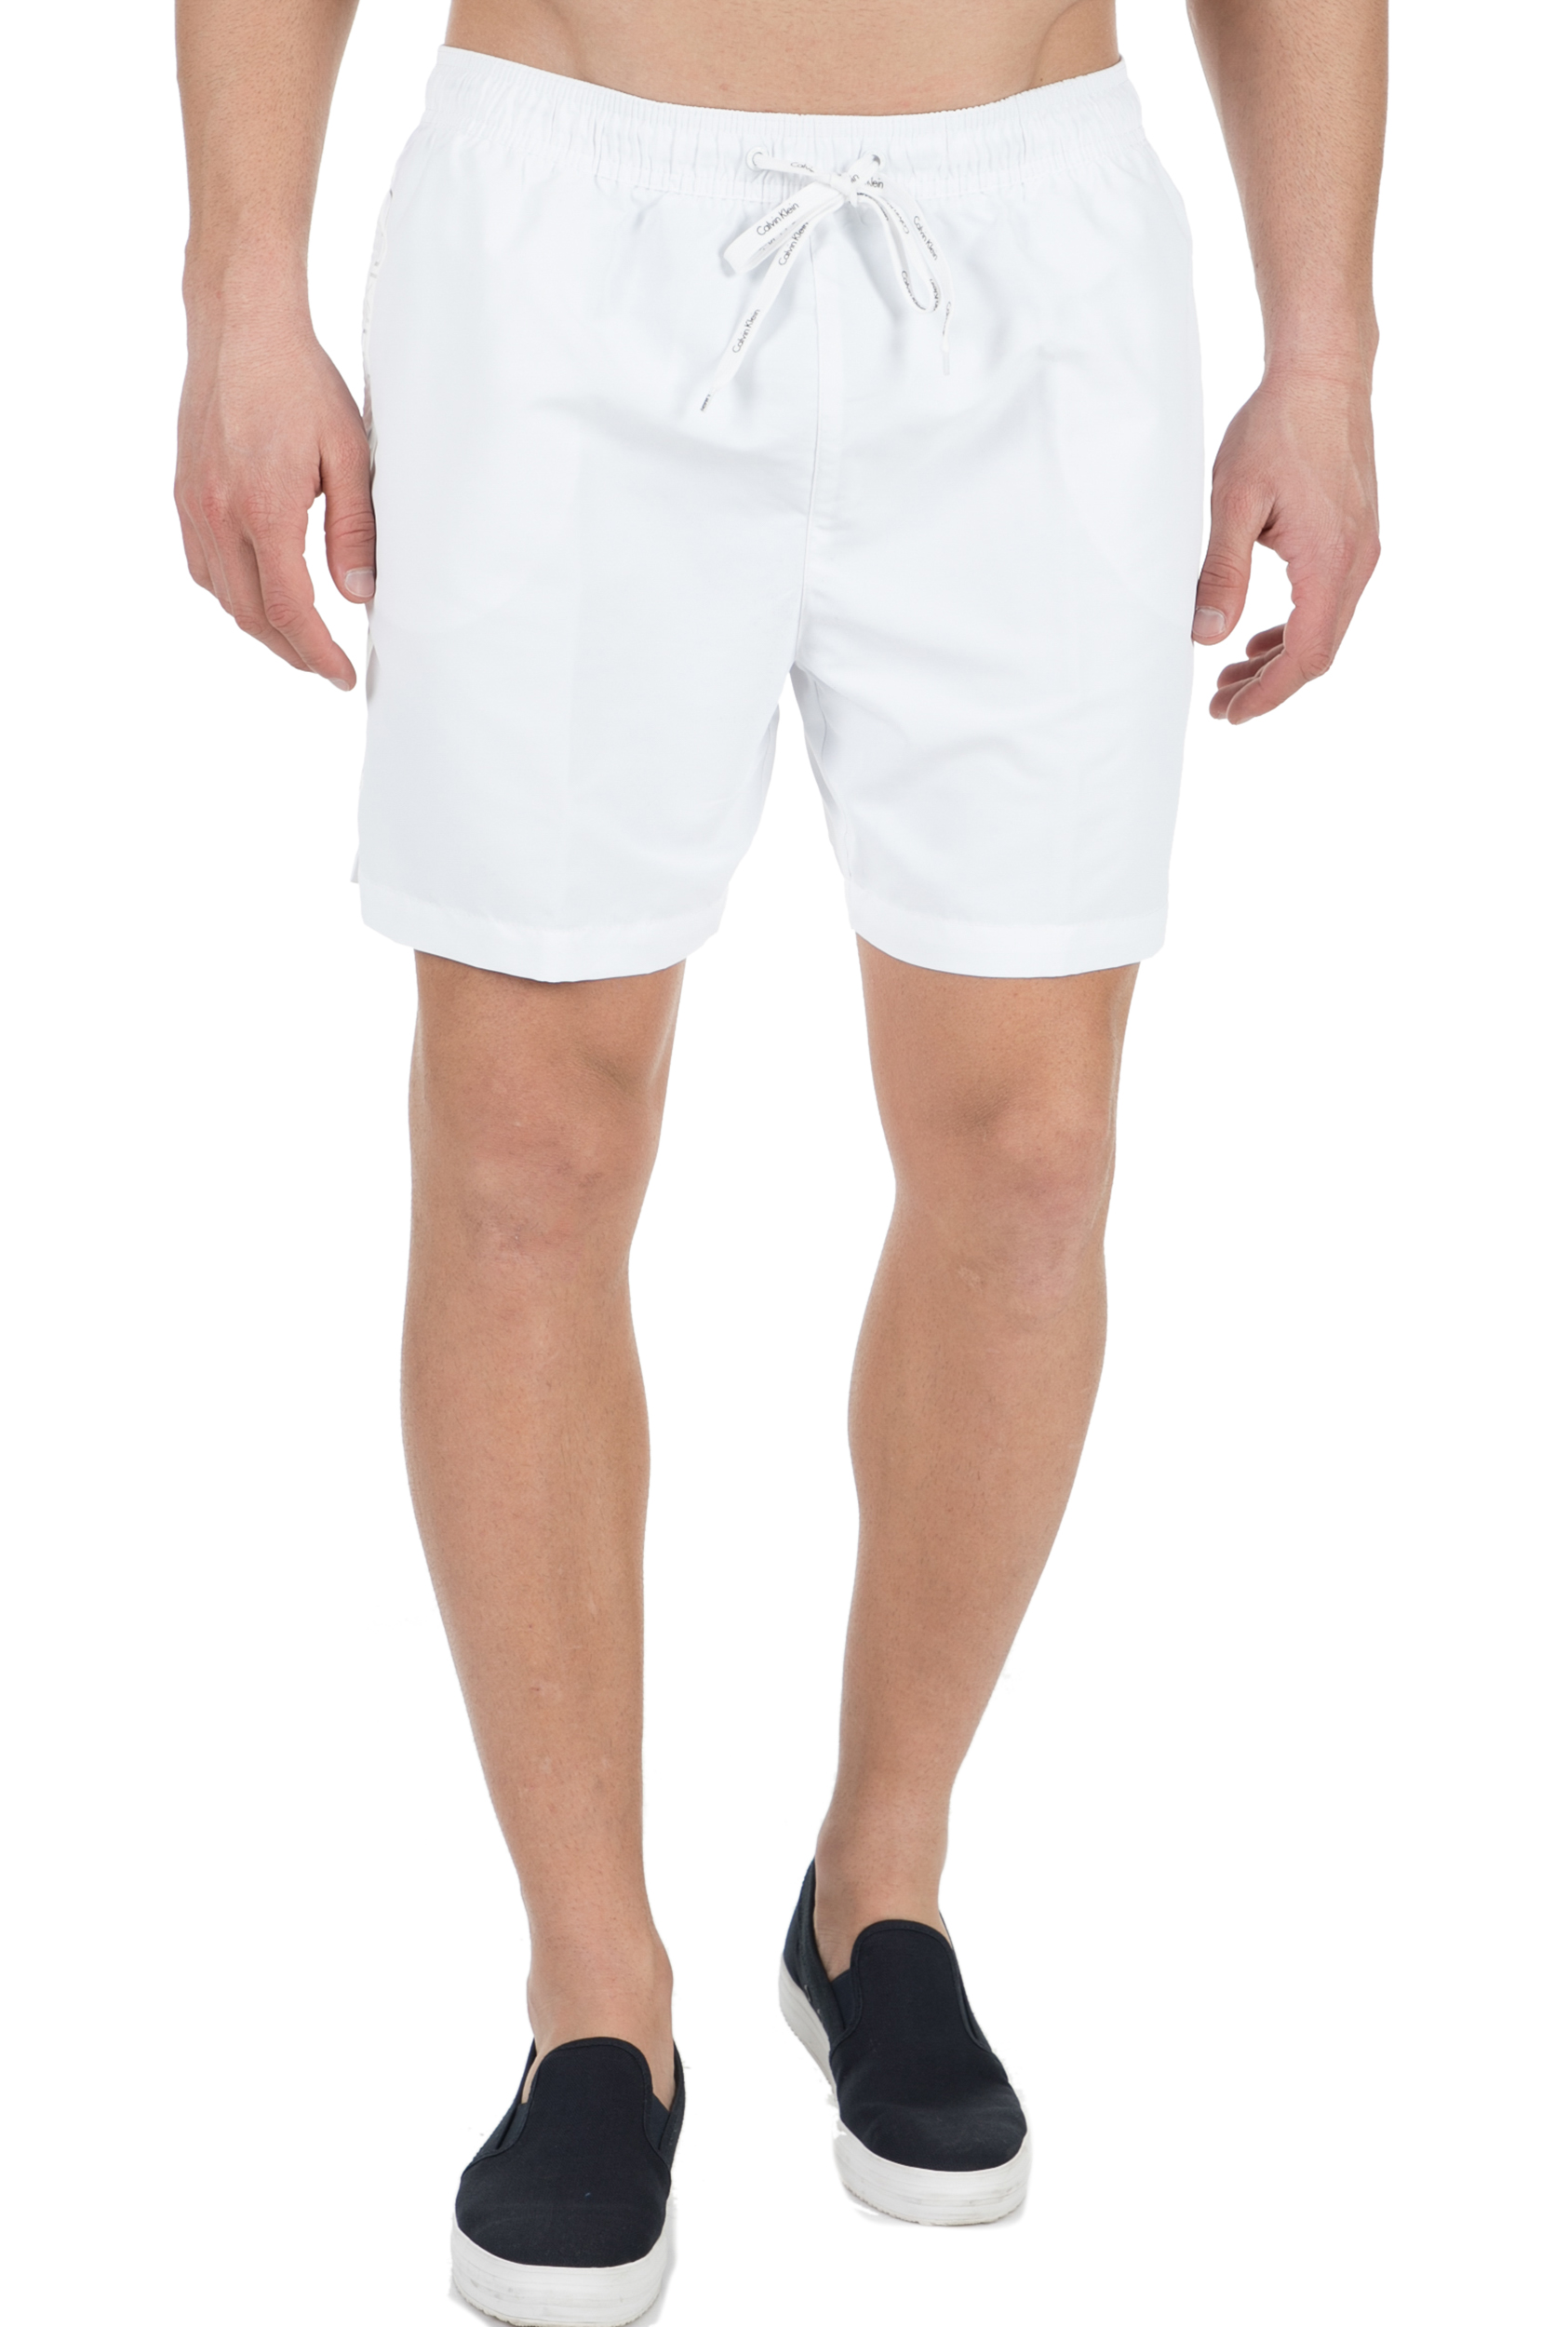 Ανδρικά/Ρούχα/Μαγιό/Σορτς CK UNDERWEAR - Ανδρικό μαγιό σορτς CK Underwear MEDIUM DRAWSTRING λευκό